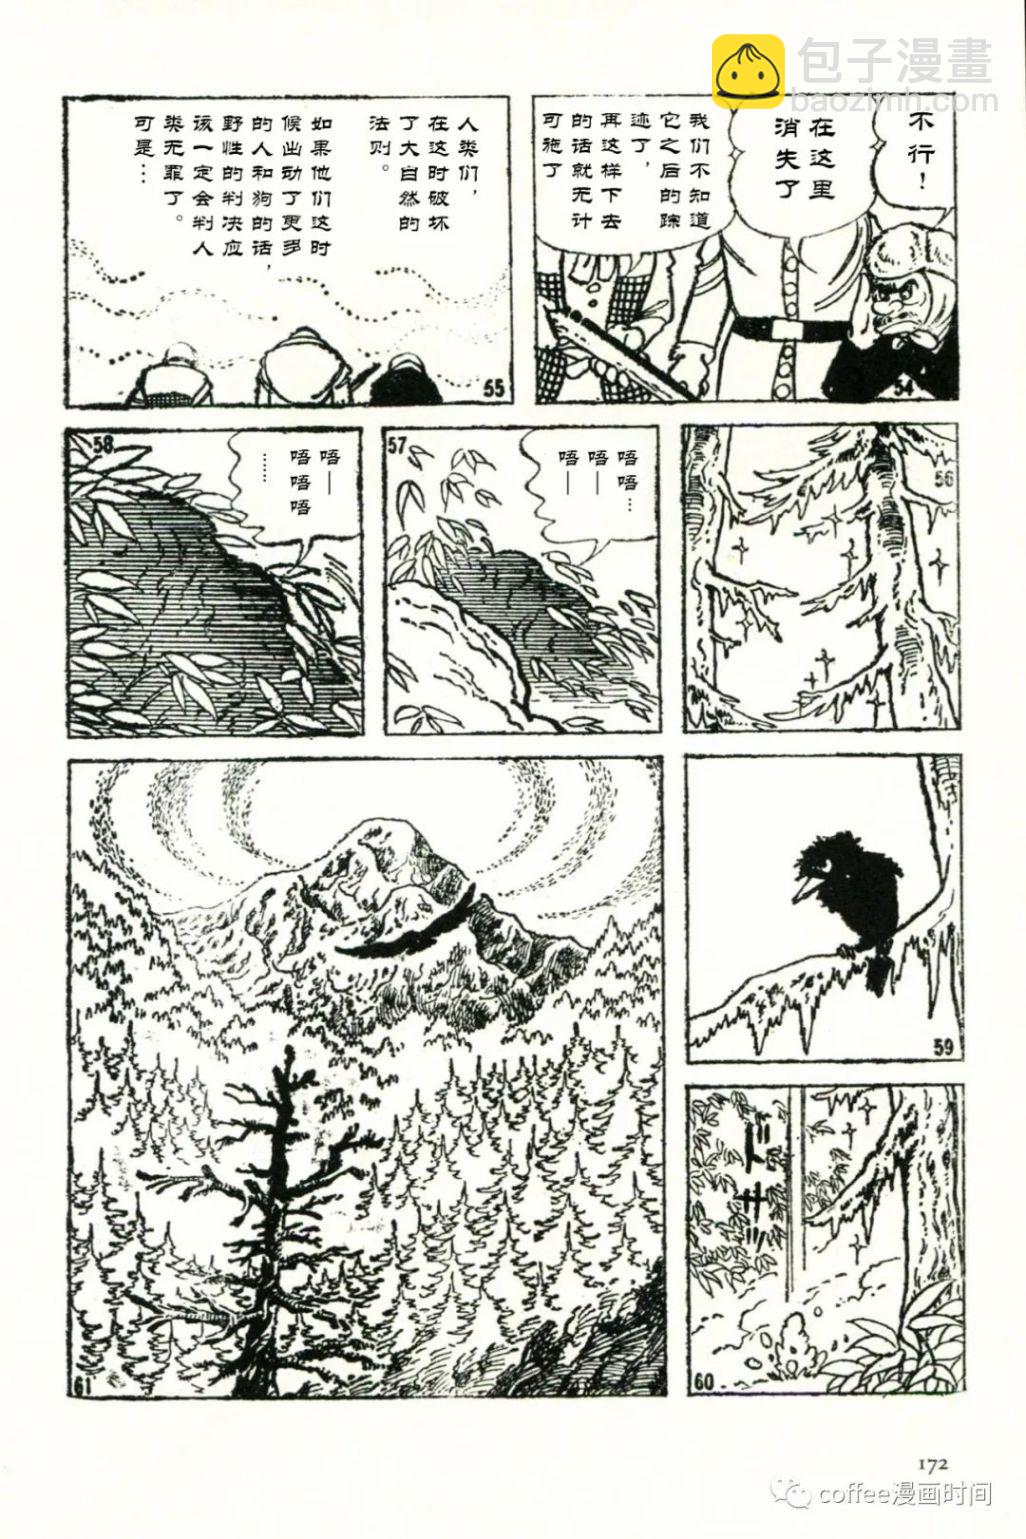 日本短篇漫畫傑作集 - 石川球太《棕熊風》 - 4